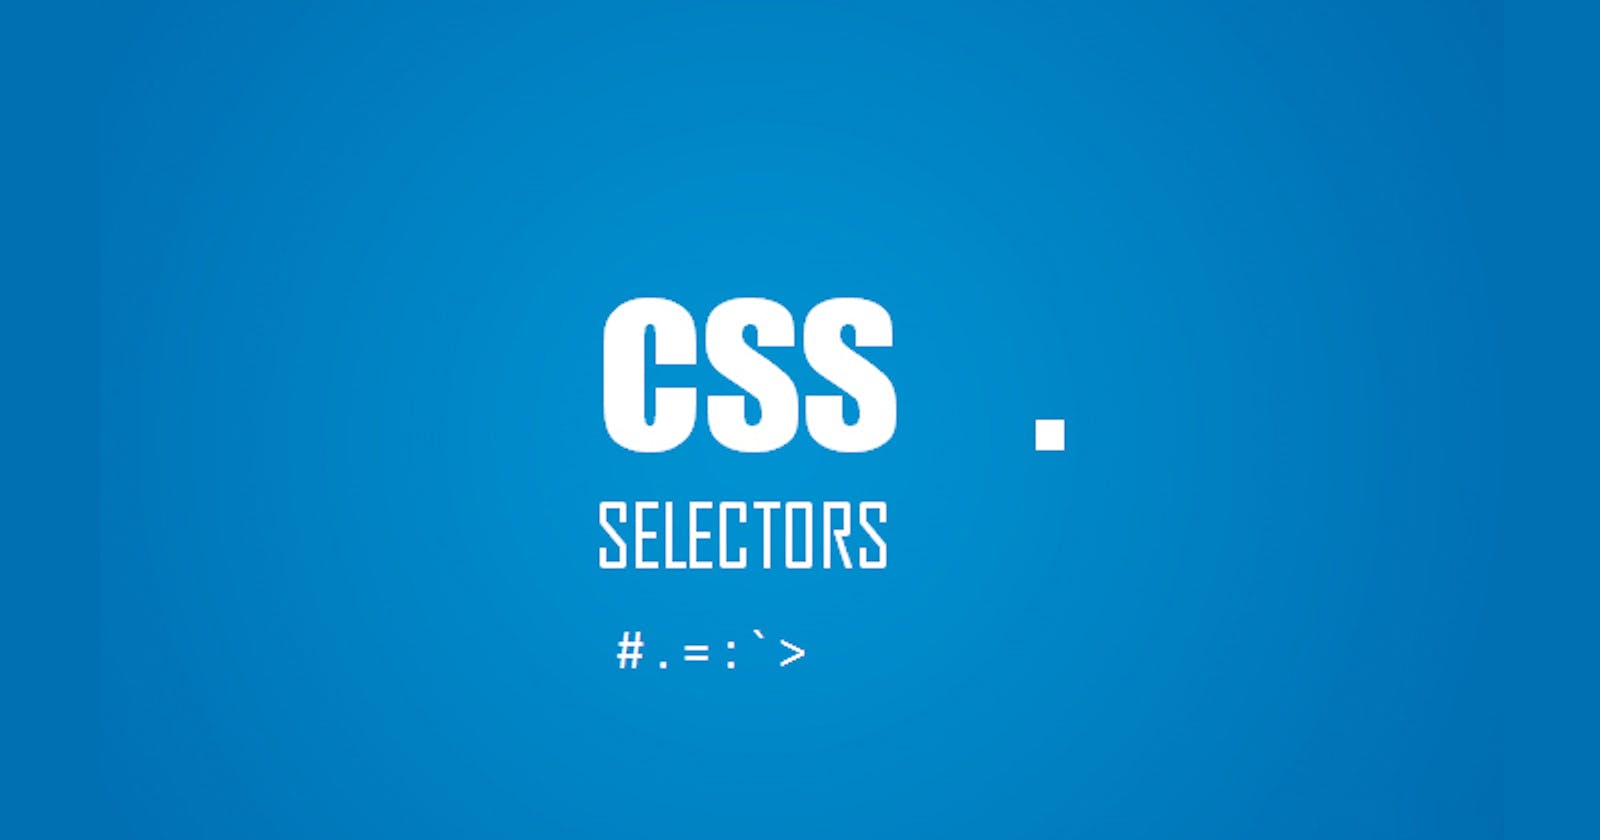 CSS Selectors [#,>,+,~,::,:,.]